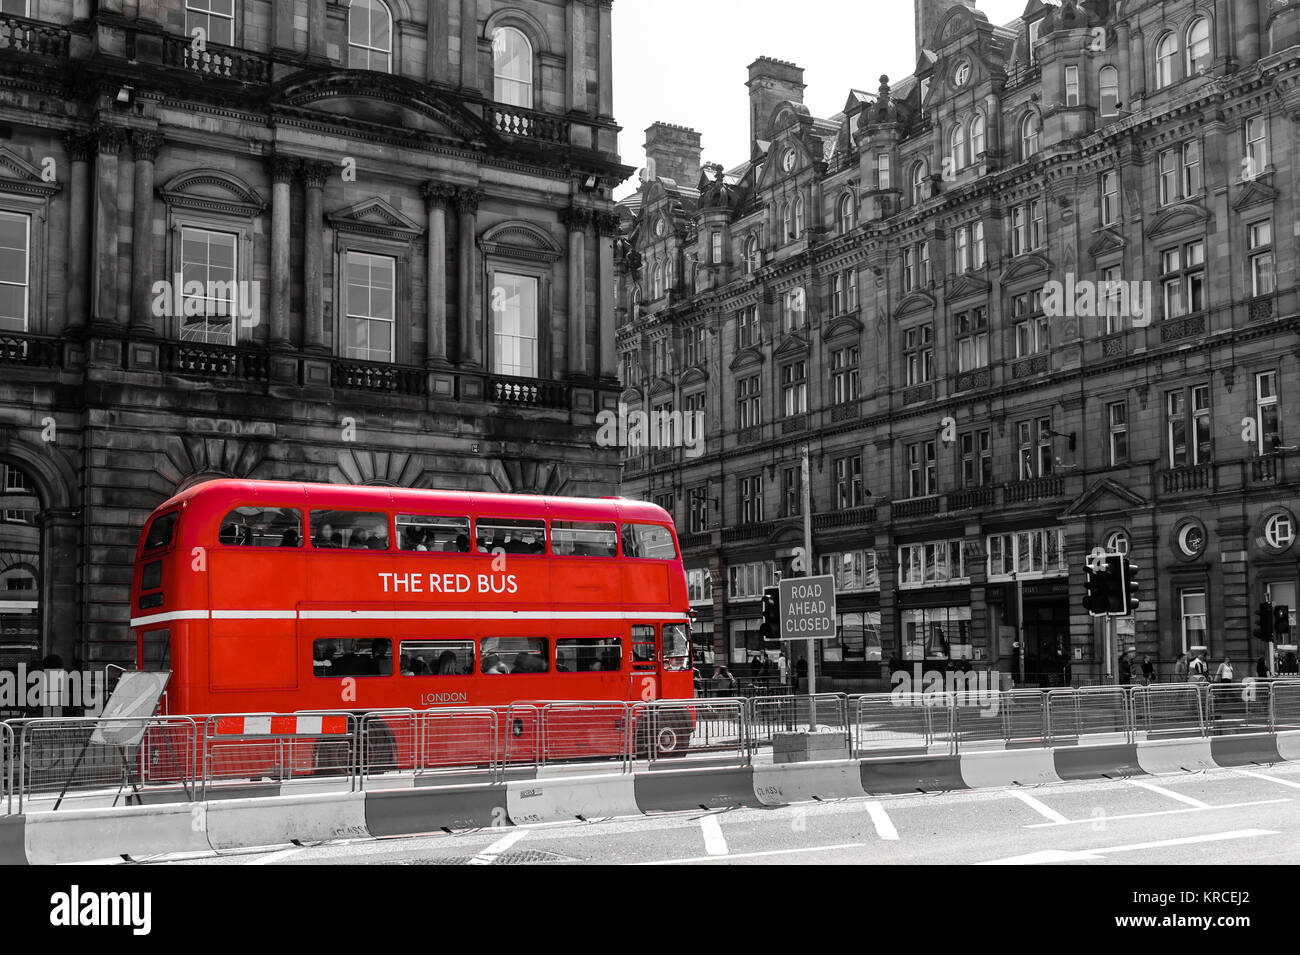 Red double decker bus d'époque dans une rue Banque D'Images